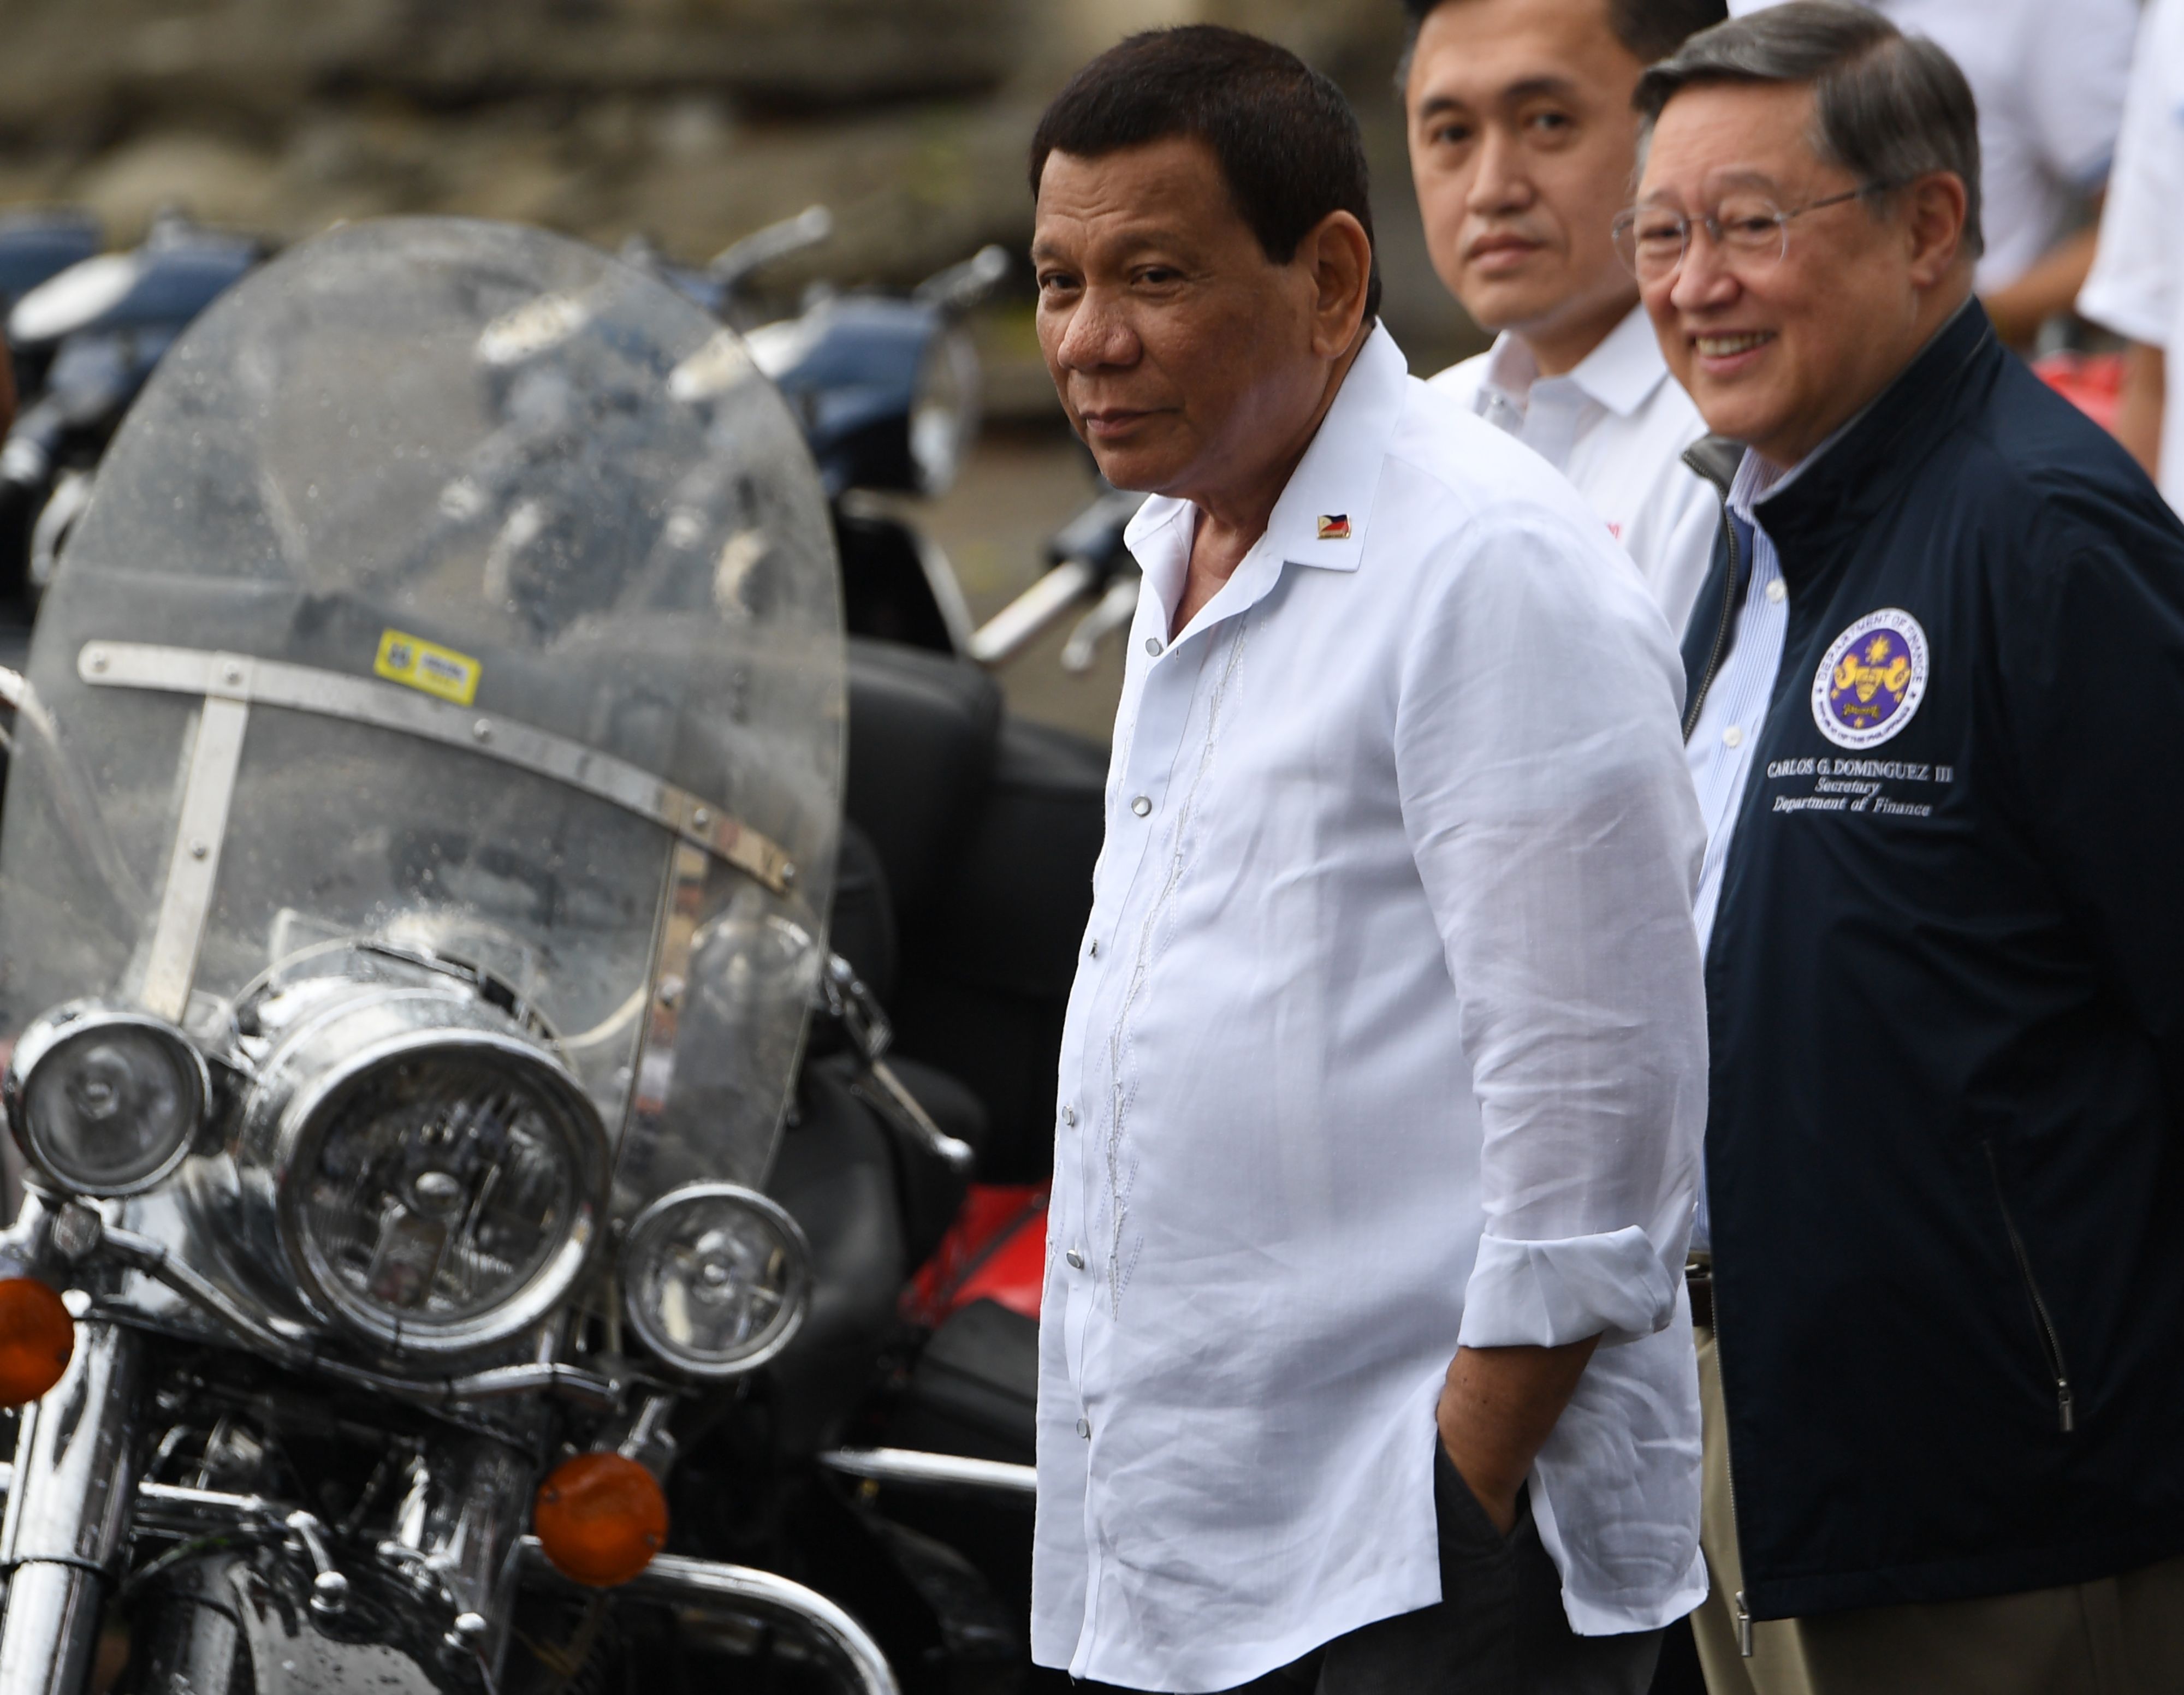 الرئيس الفلبينى بجوار الدراجات النارية المهربة قبل تدميرها